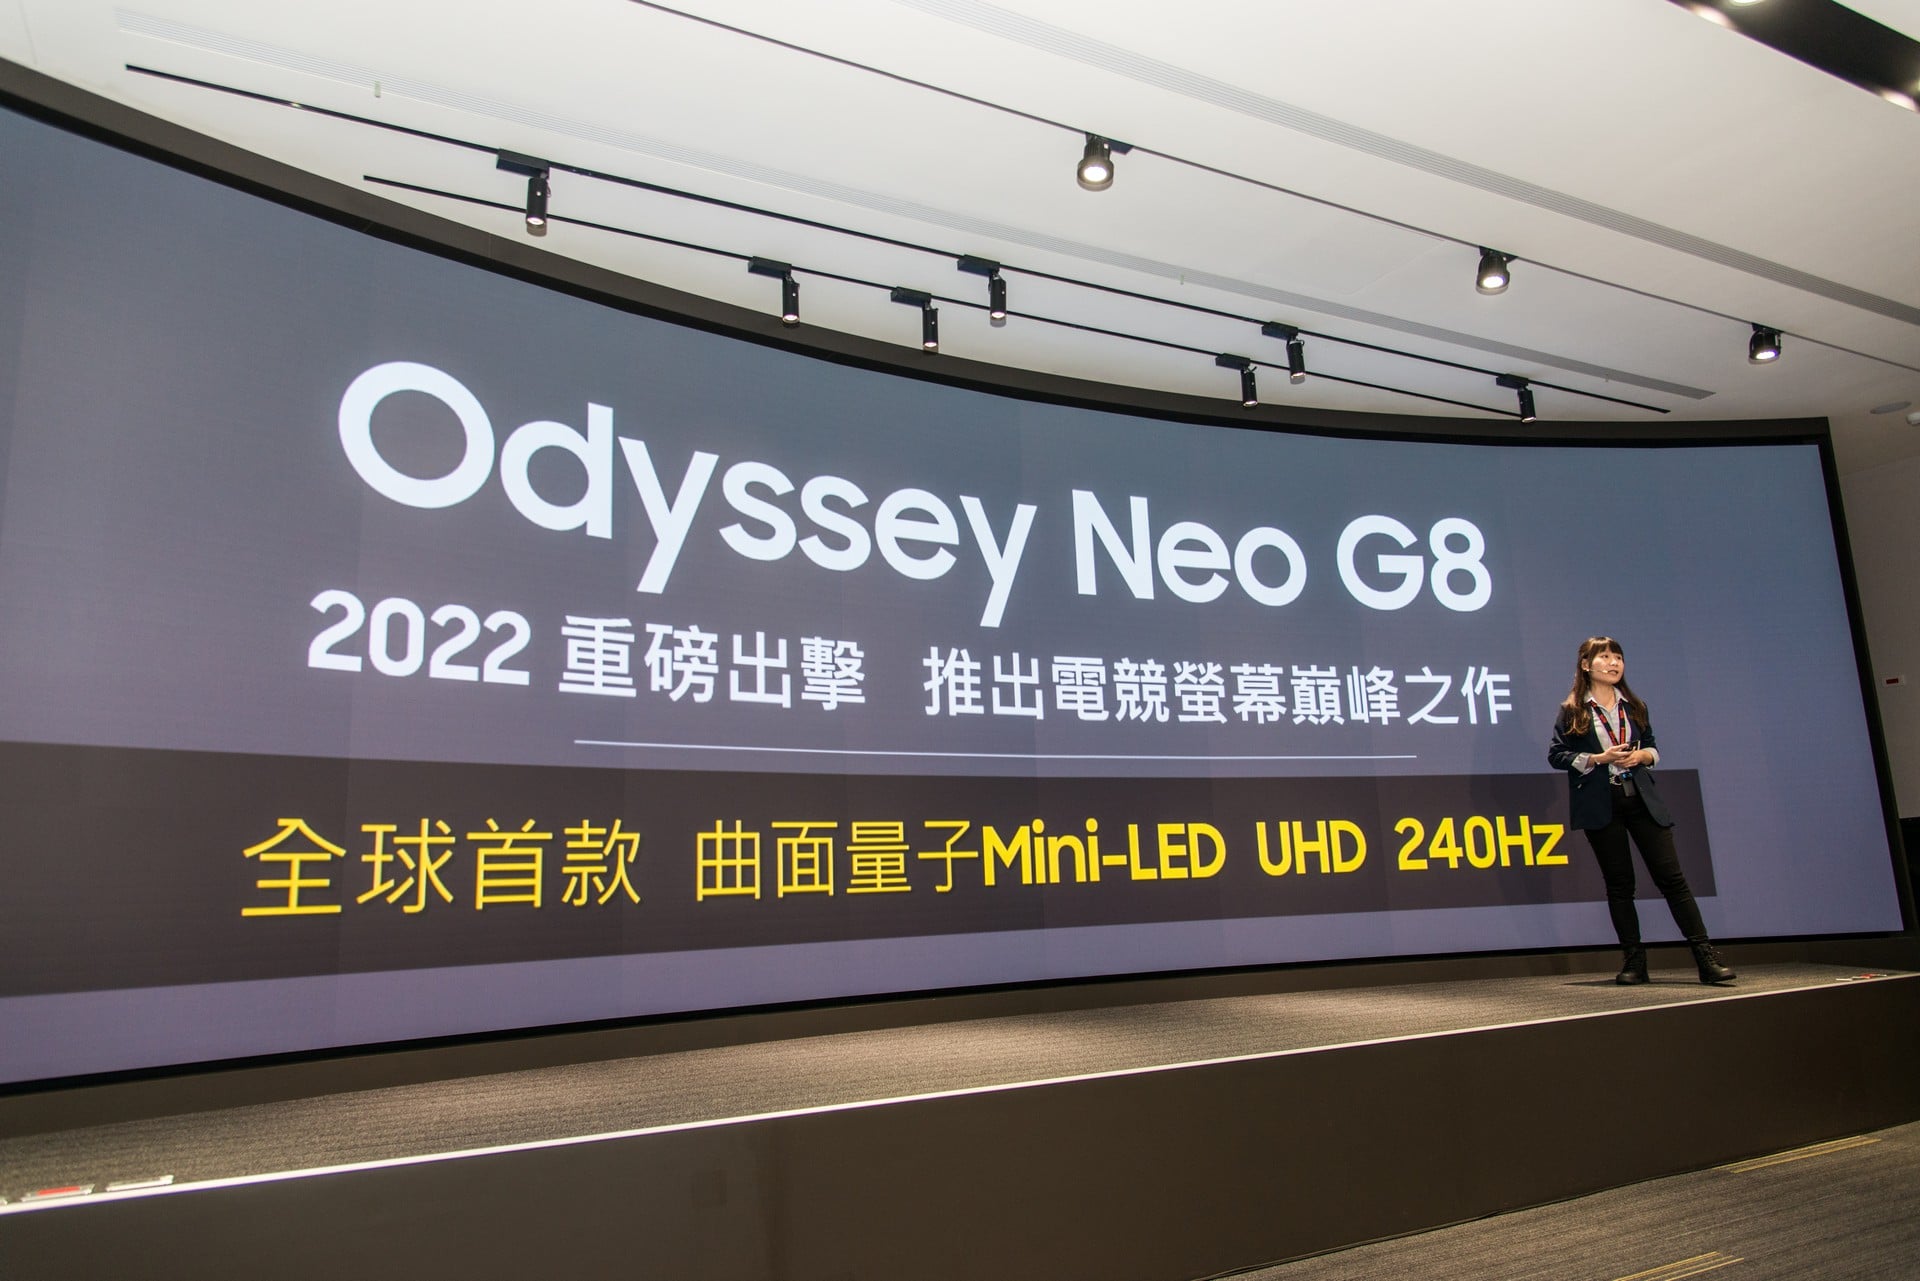 三星 Odyssey Neo G8 以傲人的規格薔和登場